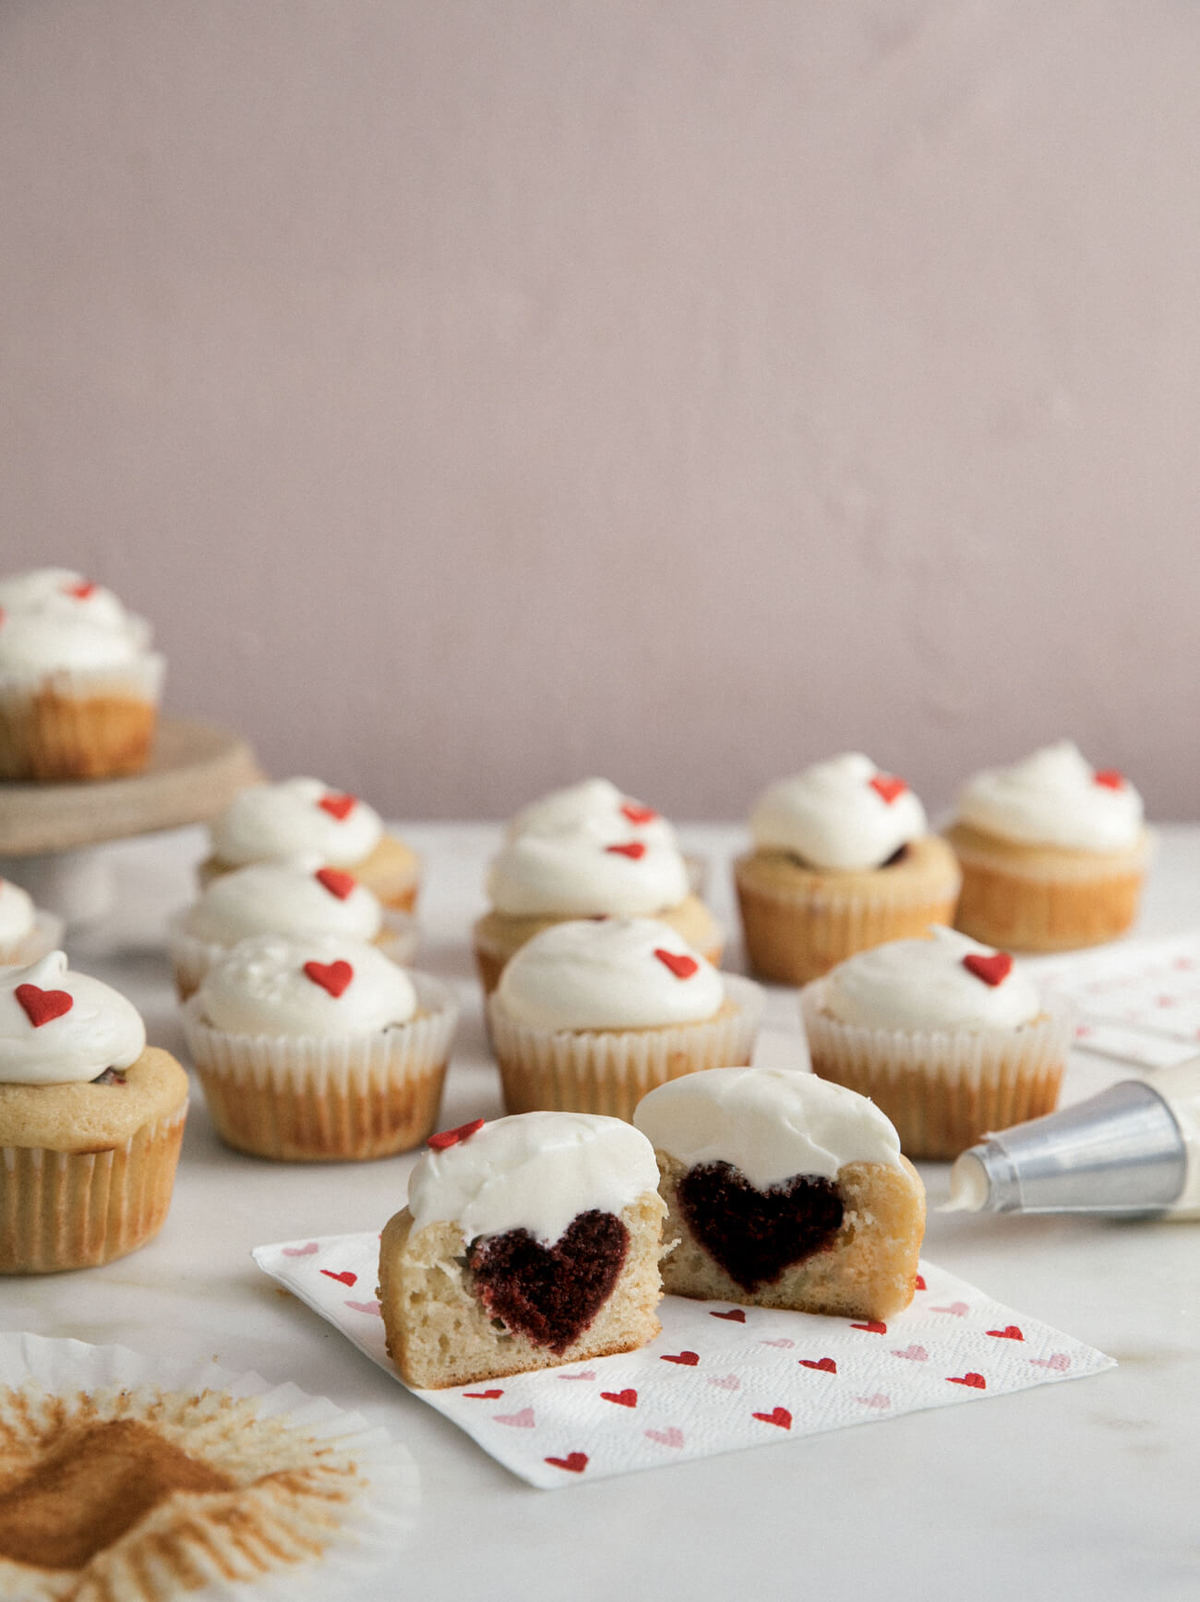 Red velvet heart surprise cupcakes.